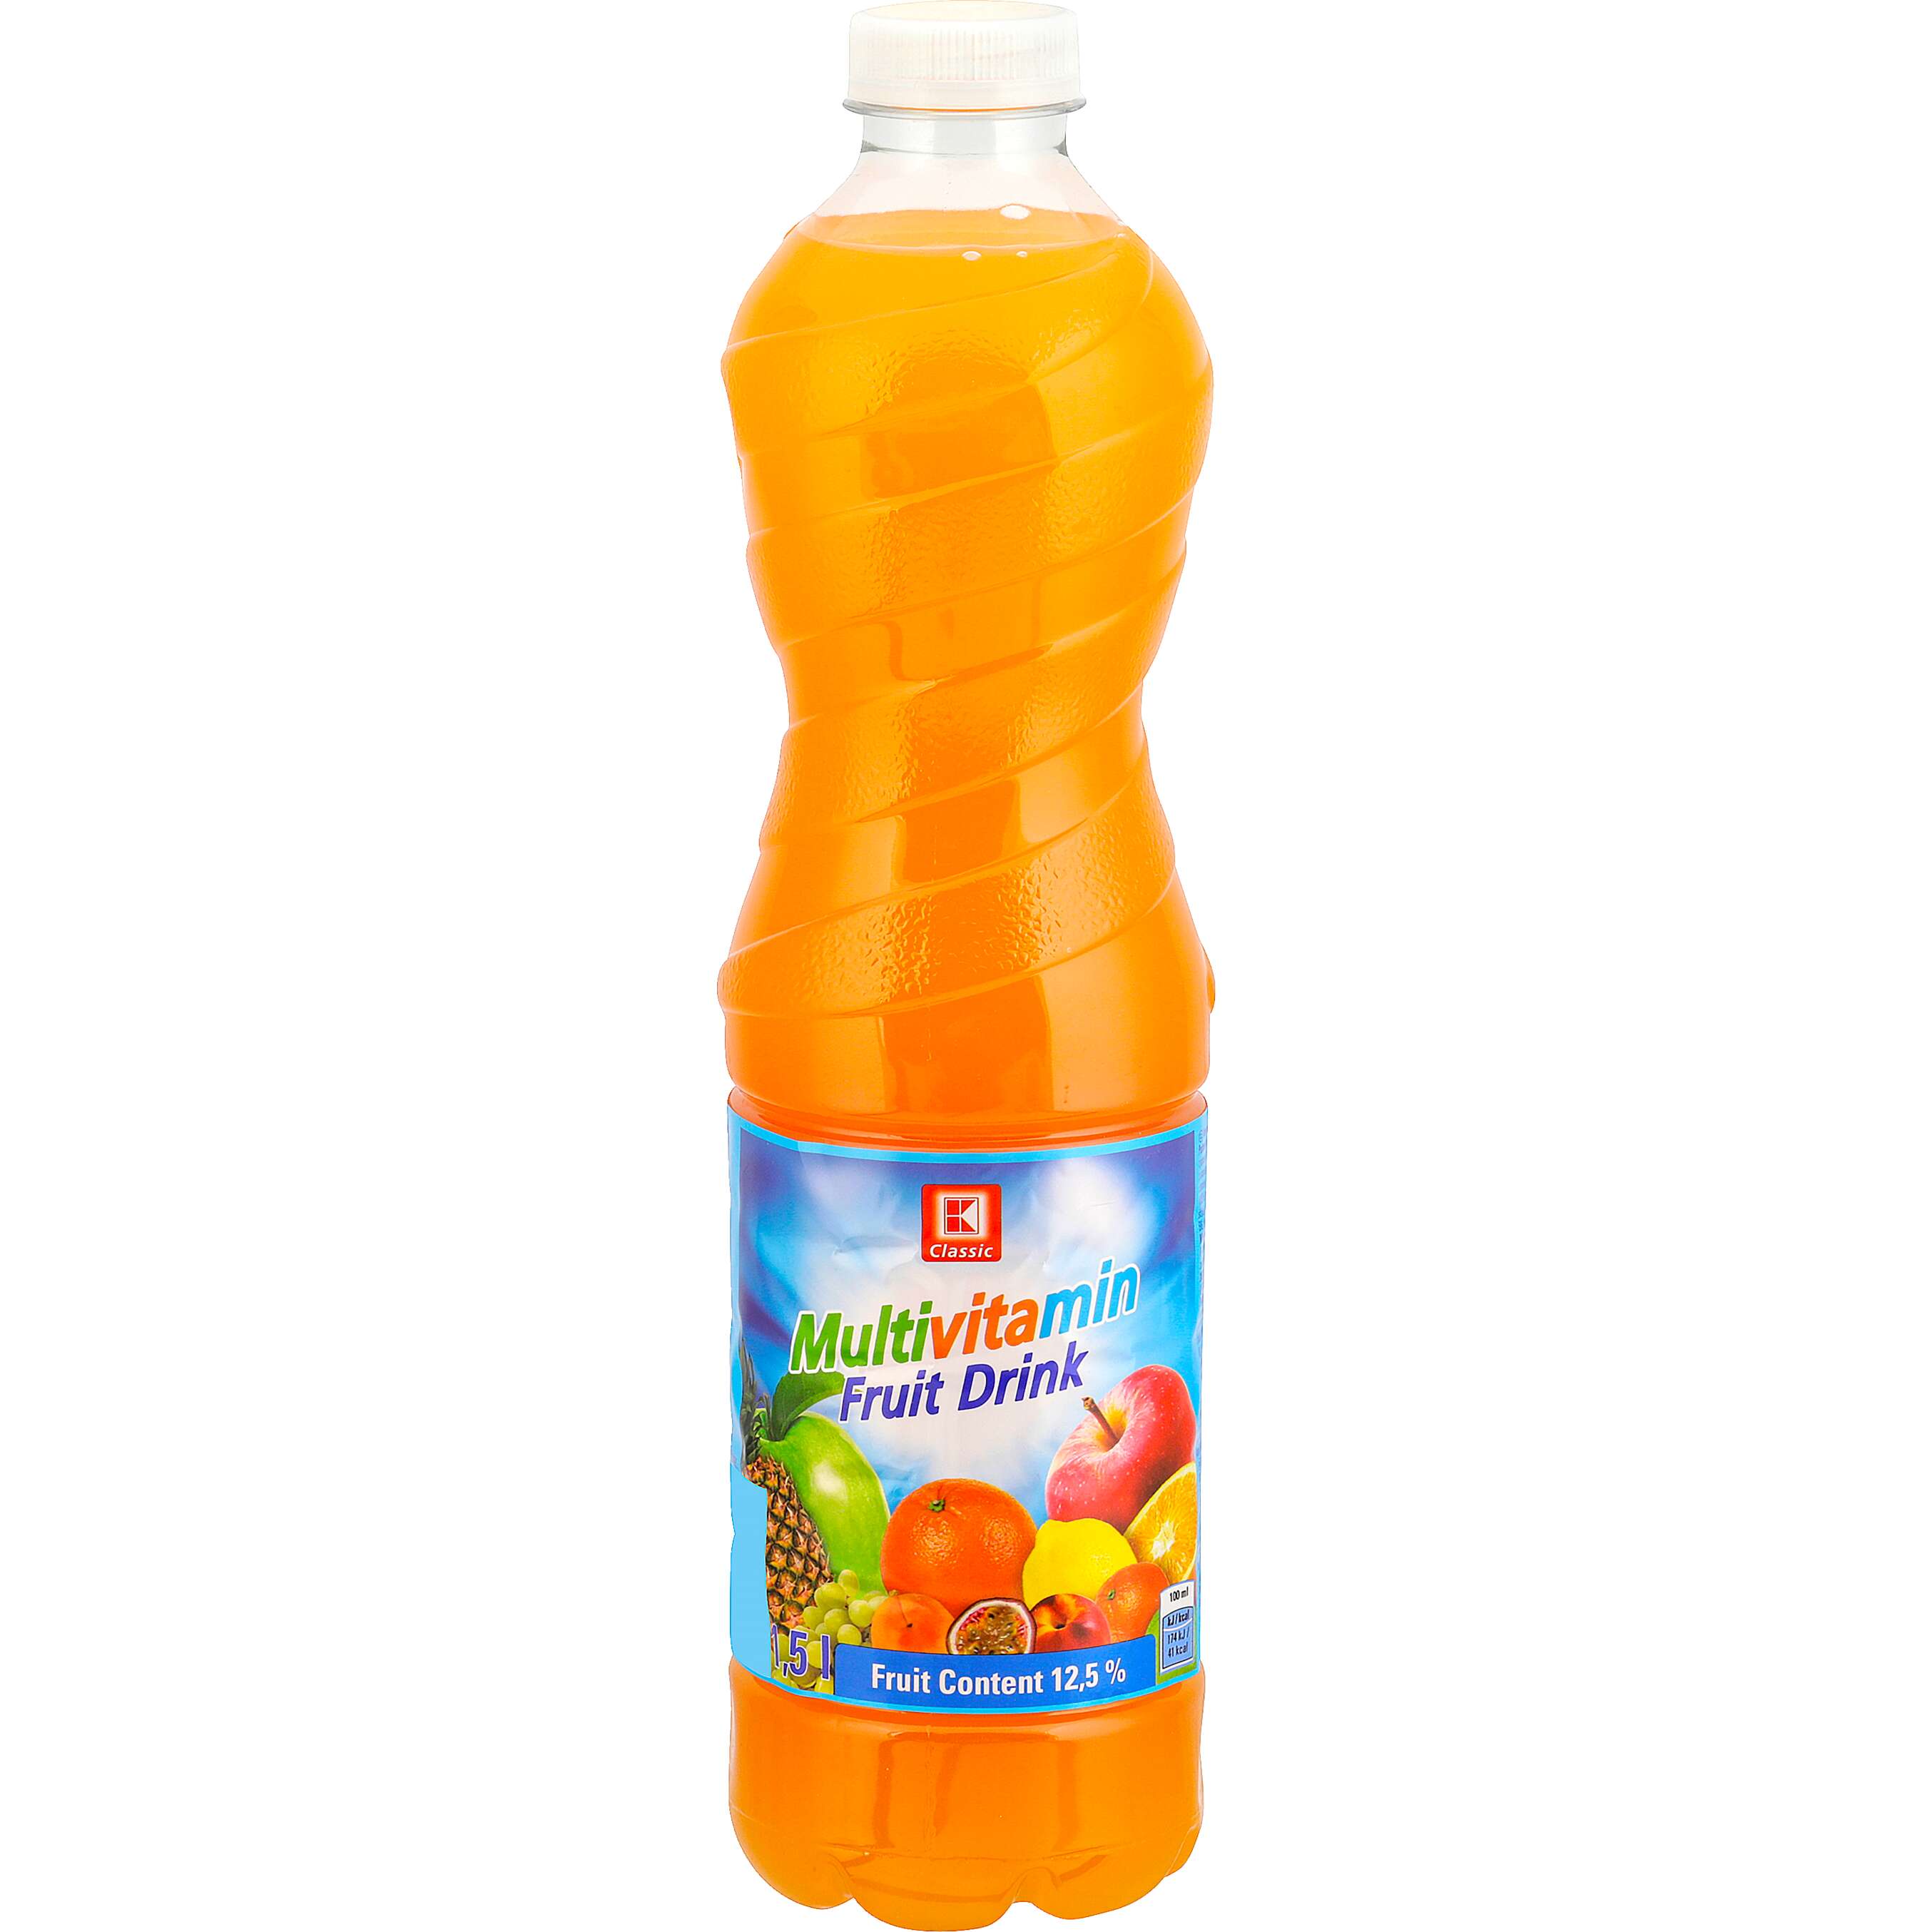 Zobrazit nabídku K-Classic Fruit drink multivitamín